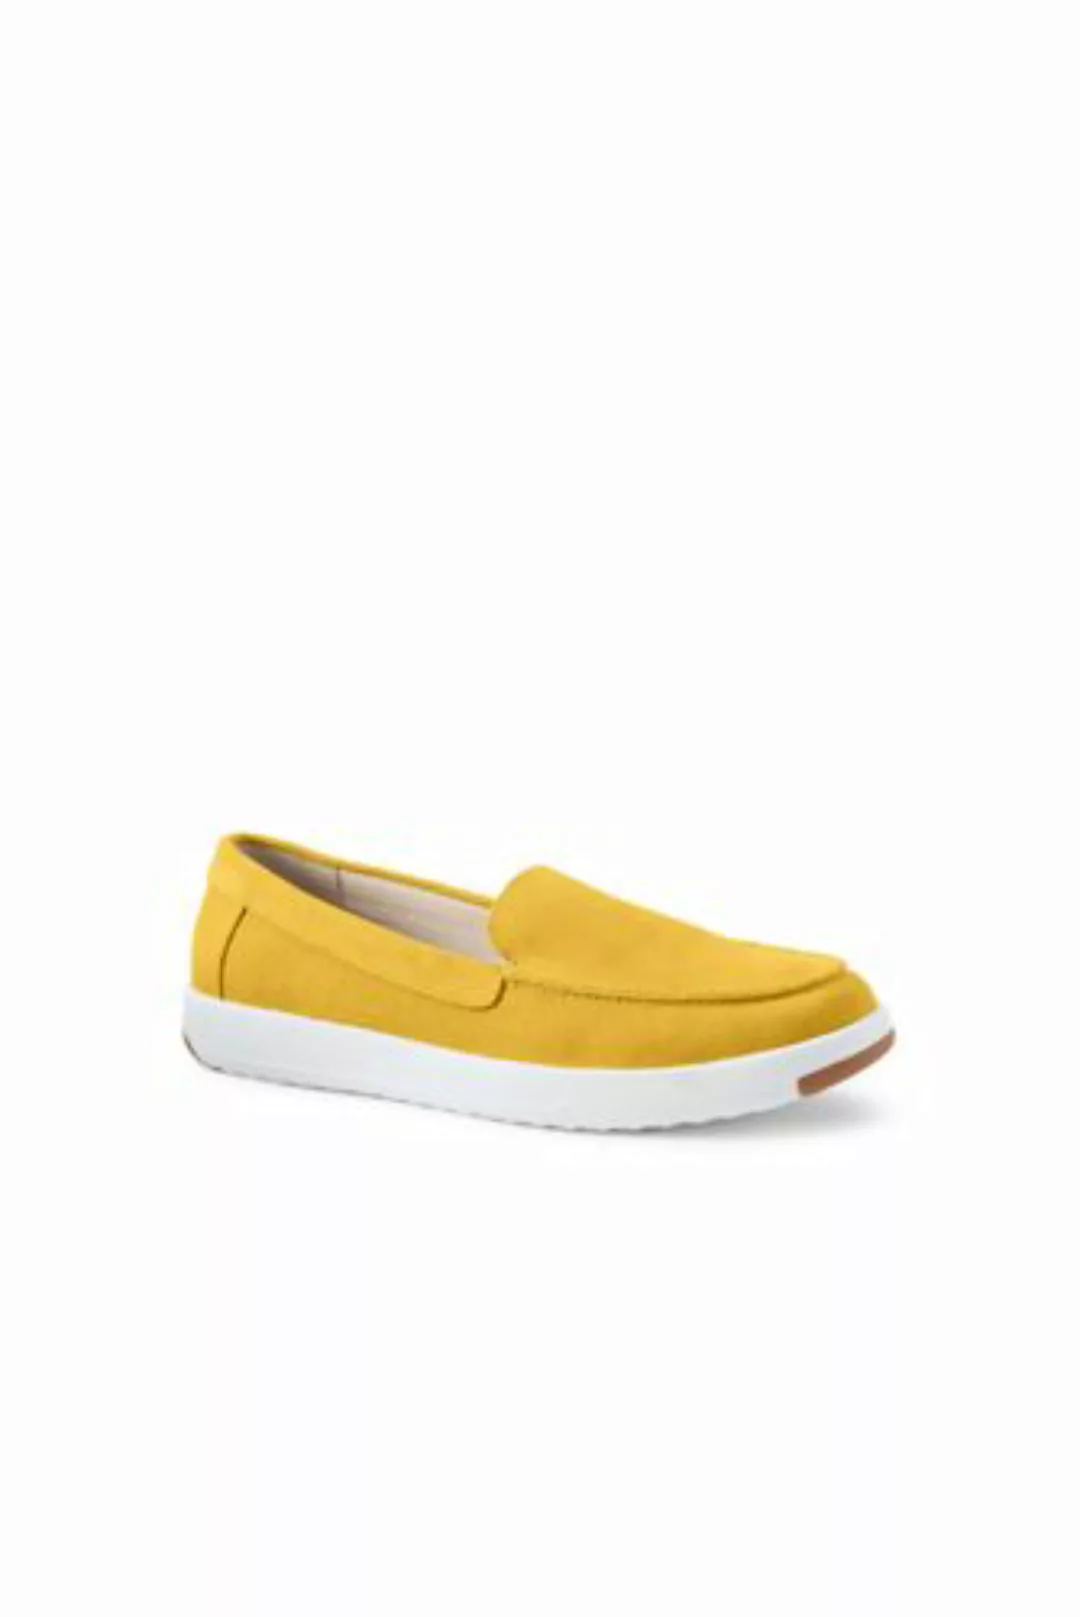 Federleichte Komfort-Loafer, Damen, Größe: 36 Normal, Gelb, Rauleder, by La günstig online kaufen